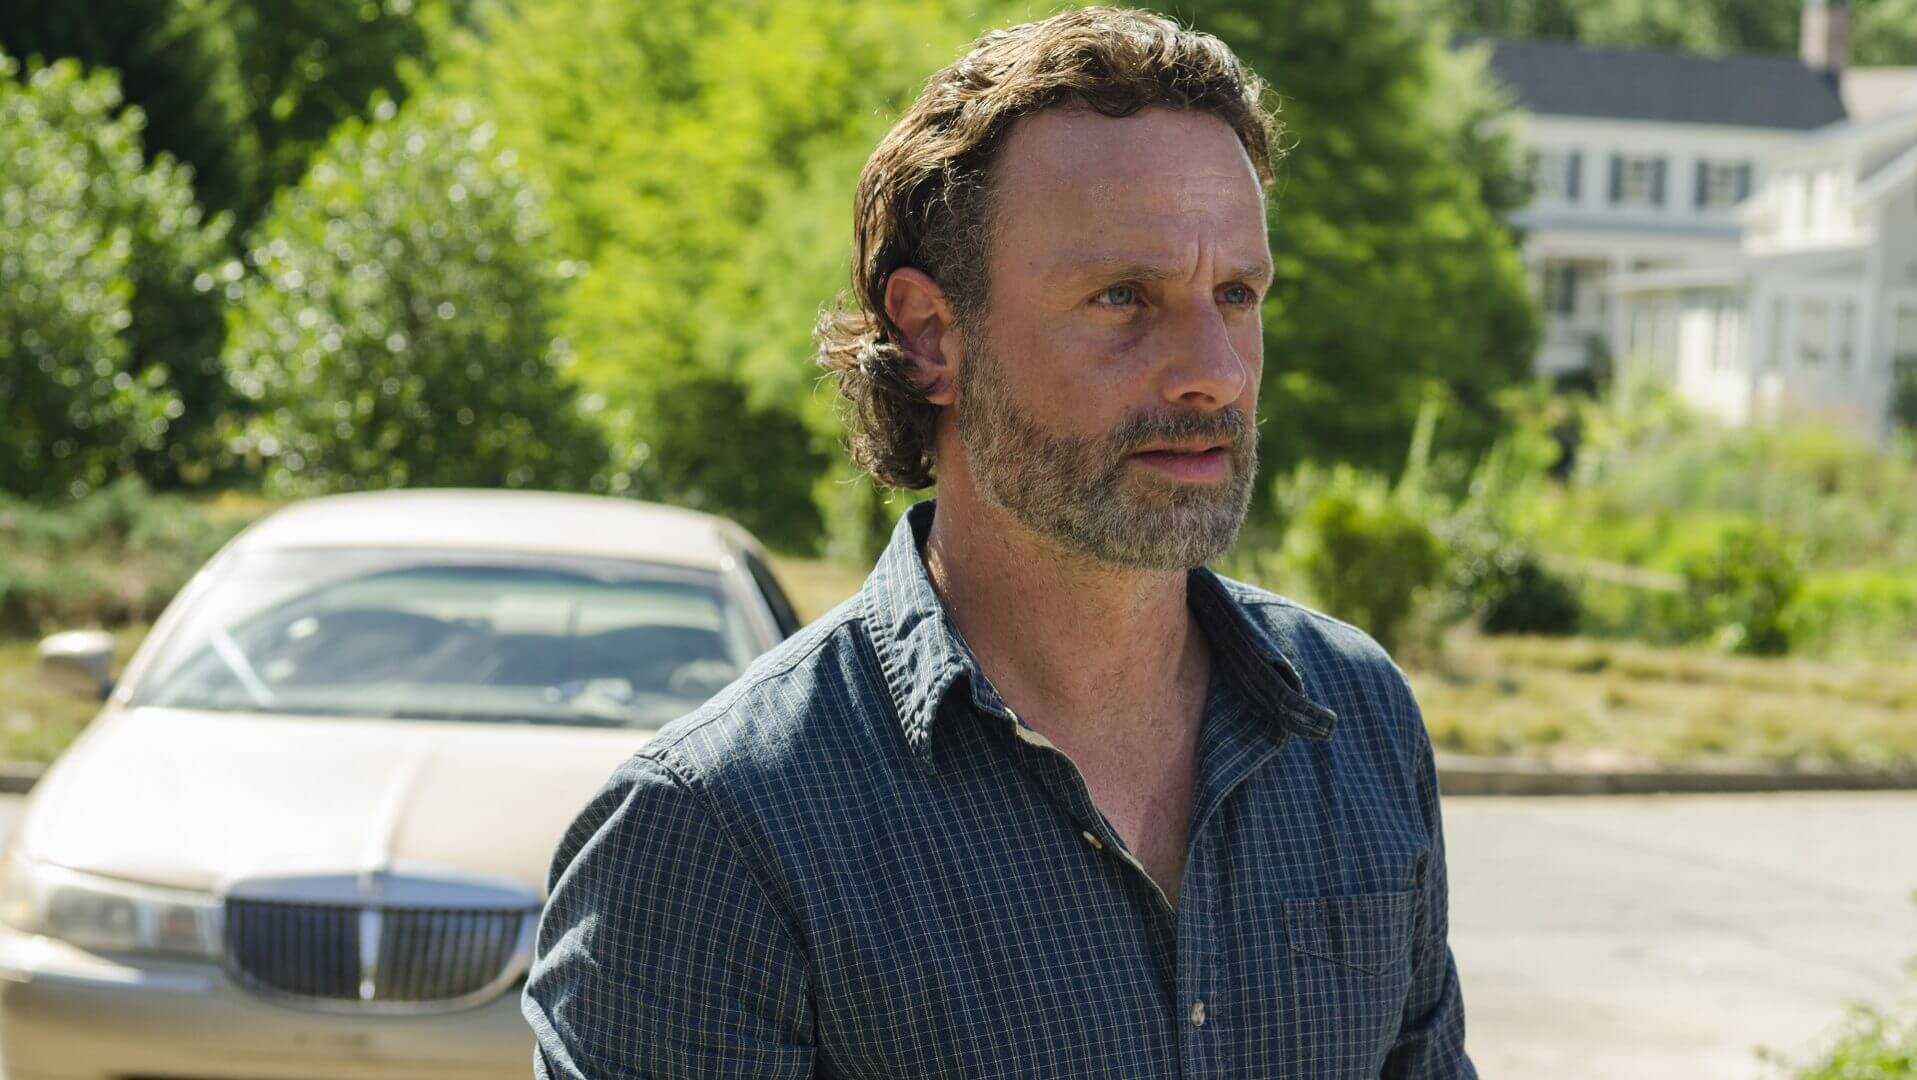 Rick in "Service" on The Walking Dead